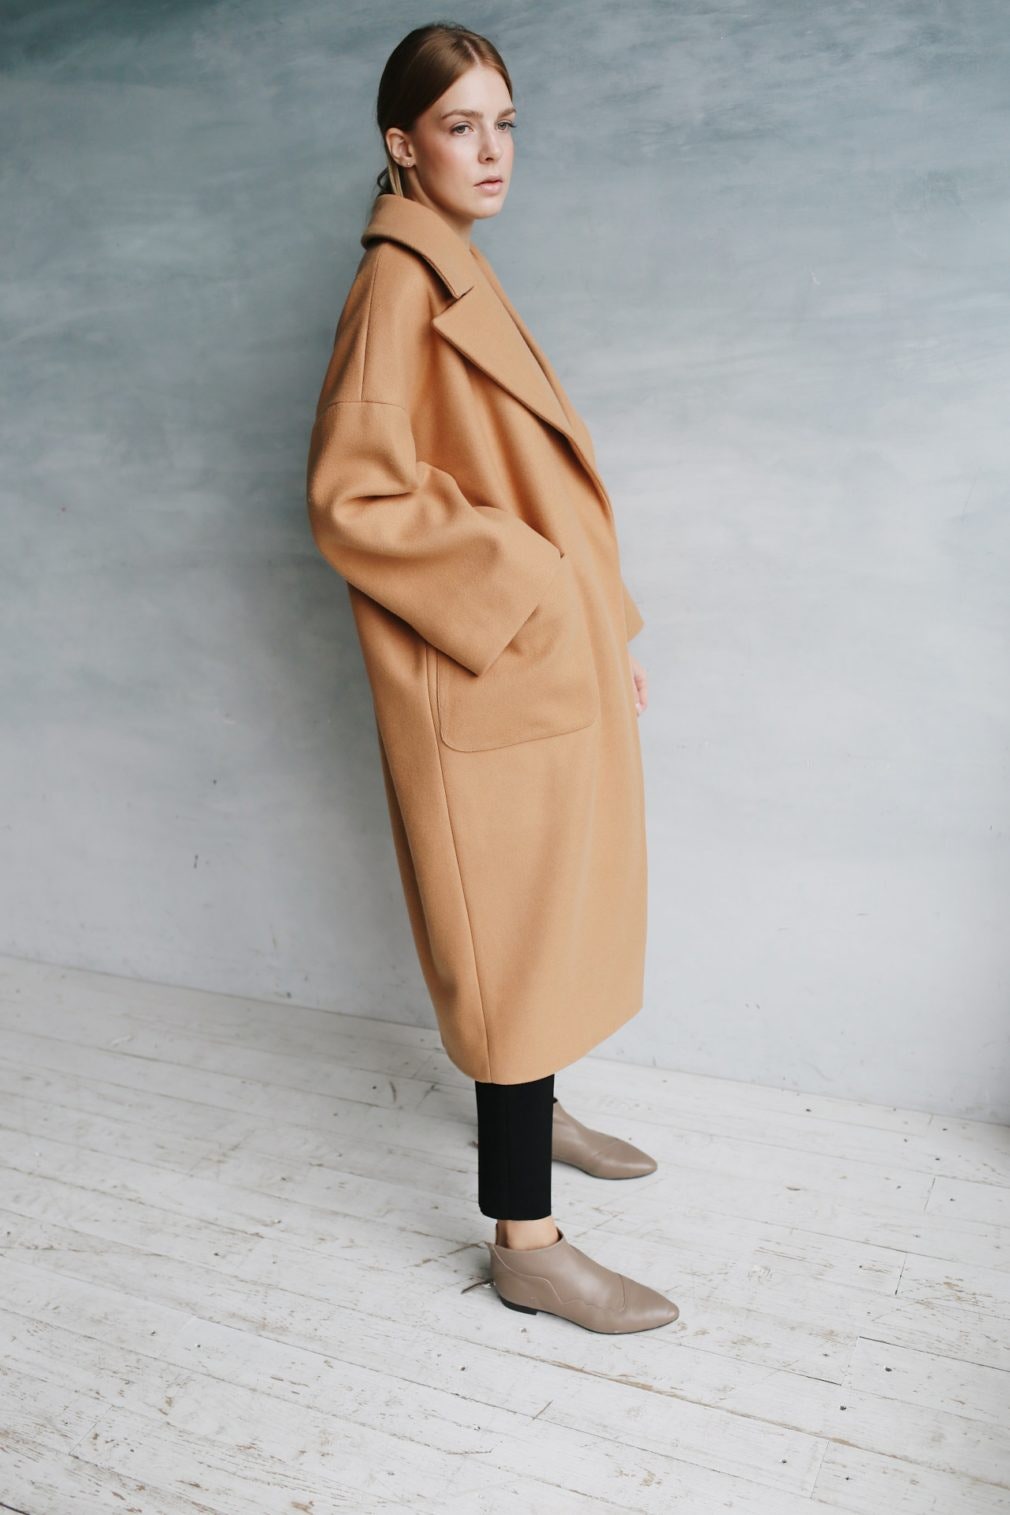 Модные пальто осени — фото 35 лучших моделей для женщин